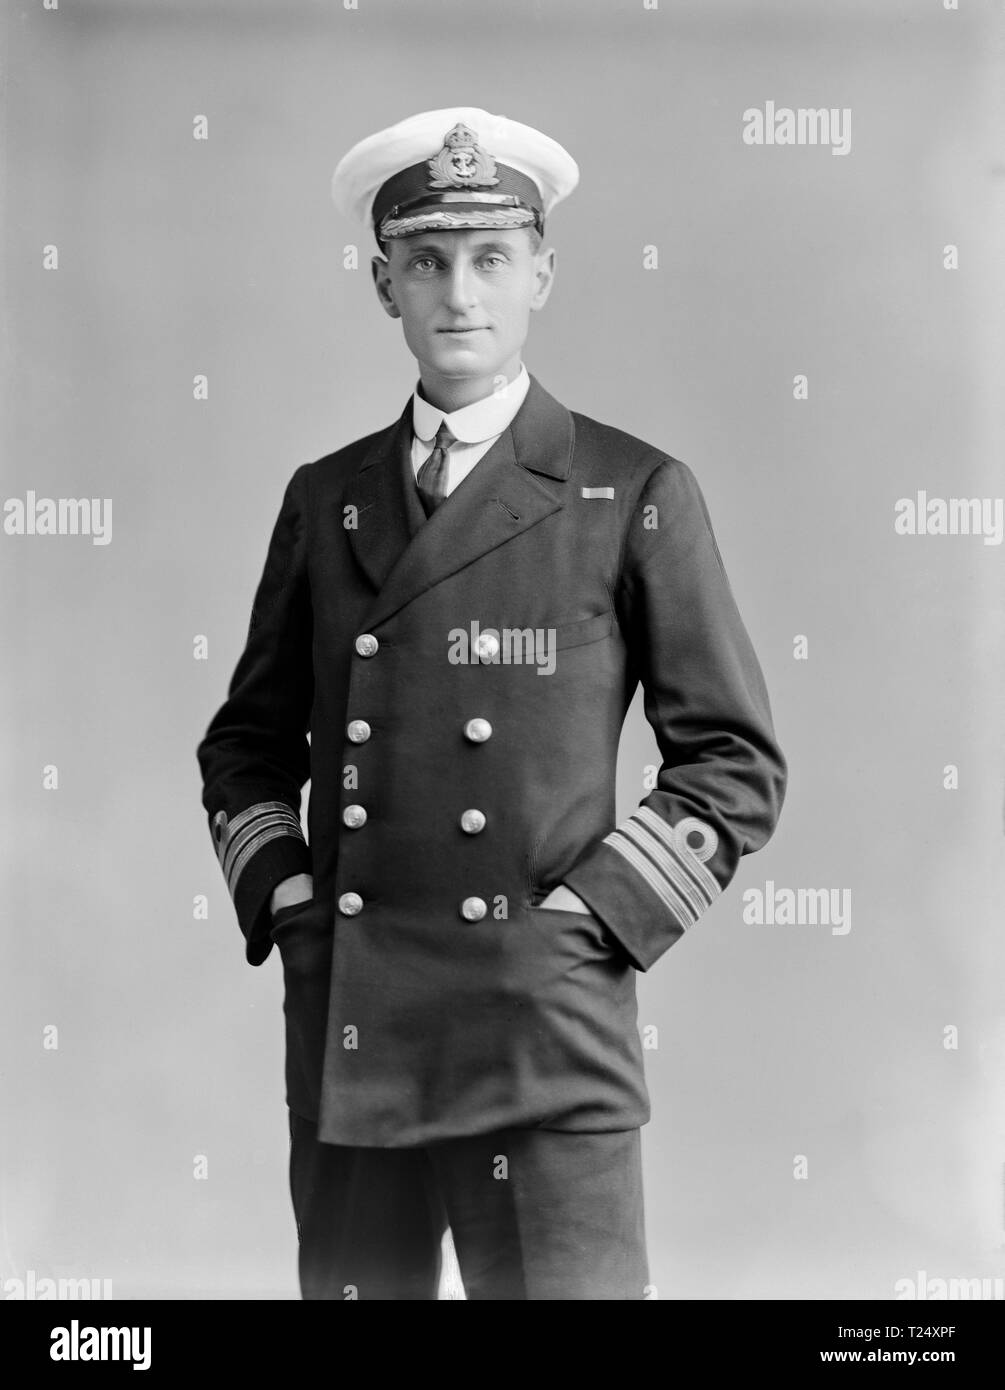 Foto am 26. September 1916 berücksichtigt. Commander K.H.Humphreys von der britischen Royal Navy. Foto in der berühmten Londoner fotografische Sudios von Alexander Bassano getroffen. Stockfoto